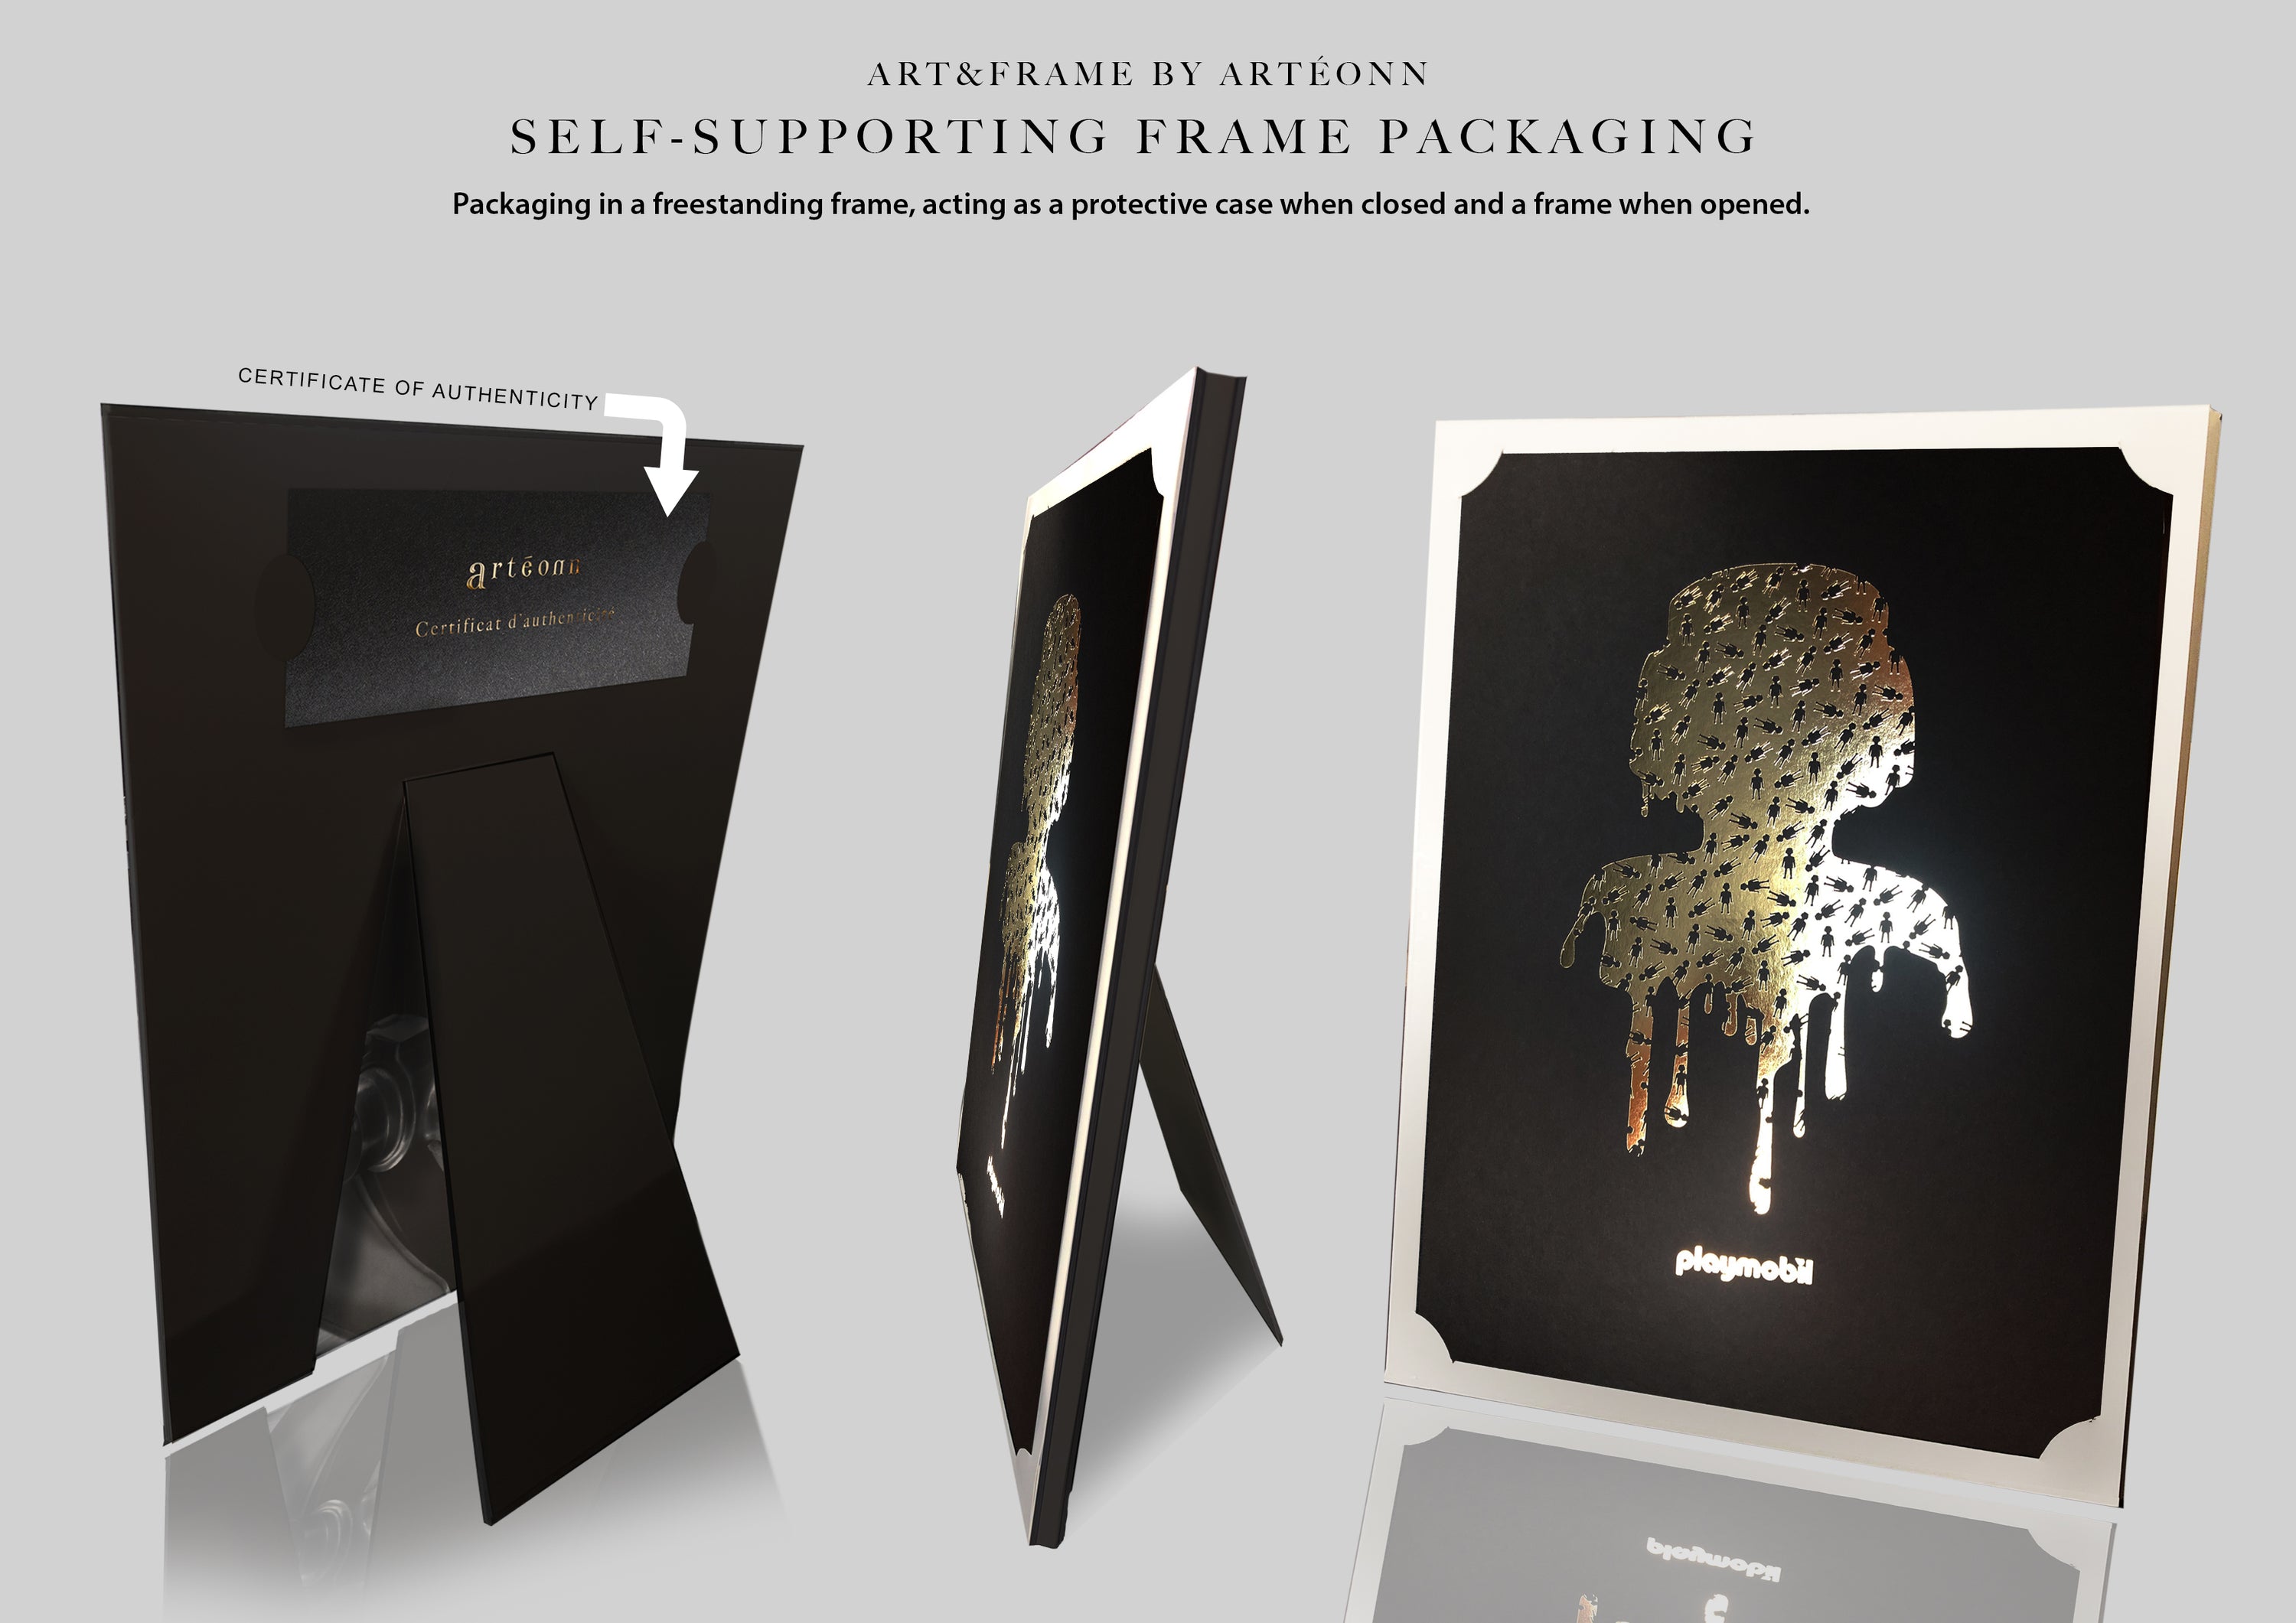 Arteonn PLAYMOBIL LIQUID Self-Holder Packaging